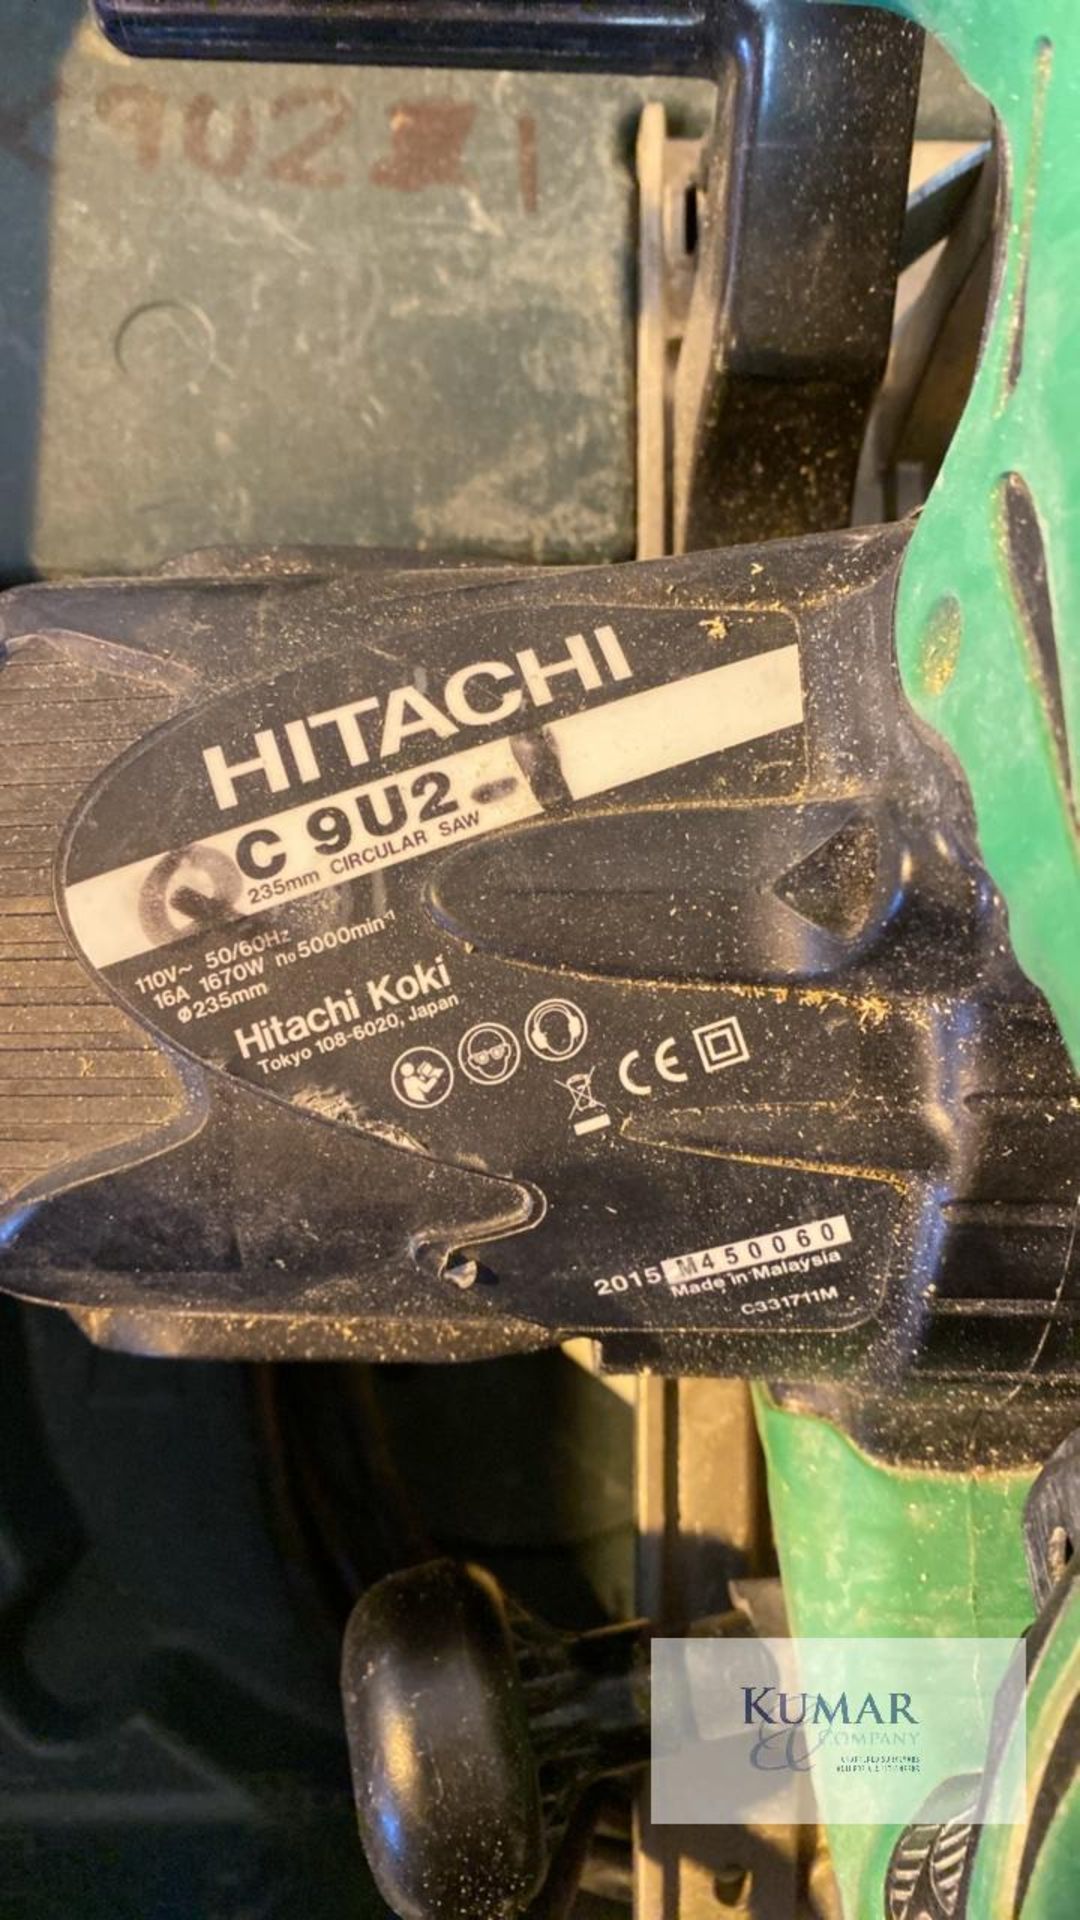 Hitachi C9U2 110v Circular Saw, Serial No.M450060 (2015) in Carry Case - Bild 2 aus 4